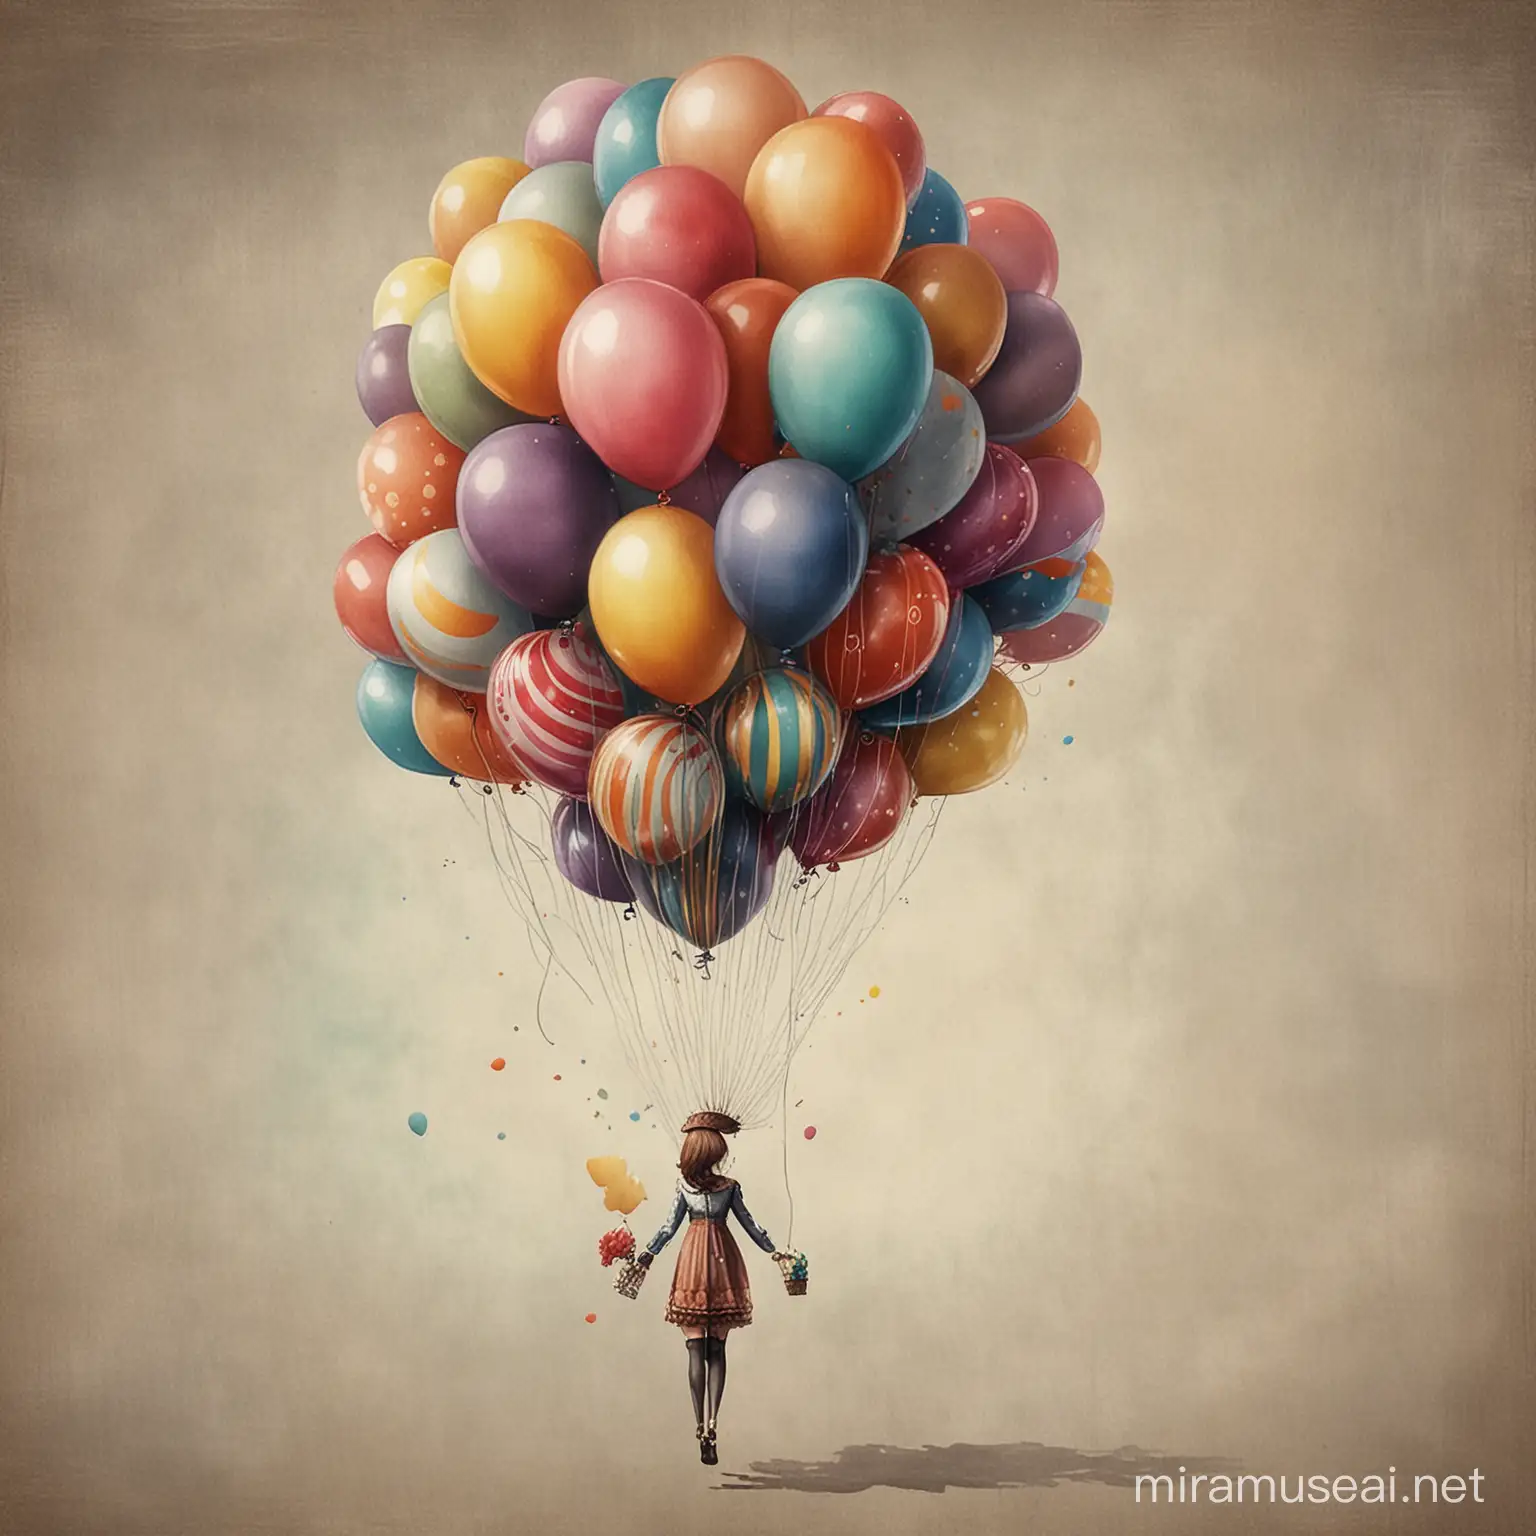 Whimsical  art, balloons